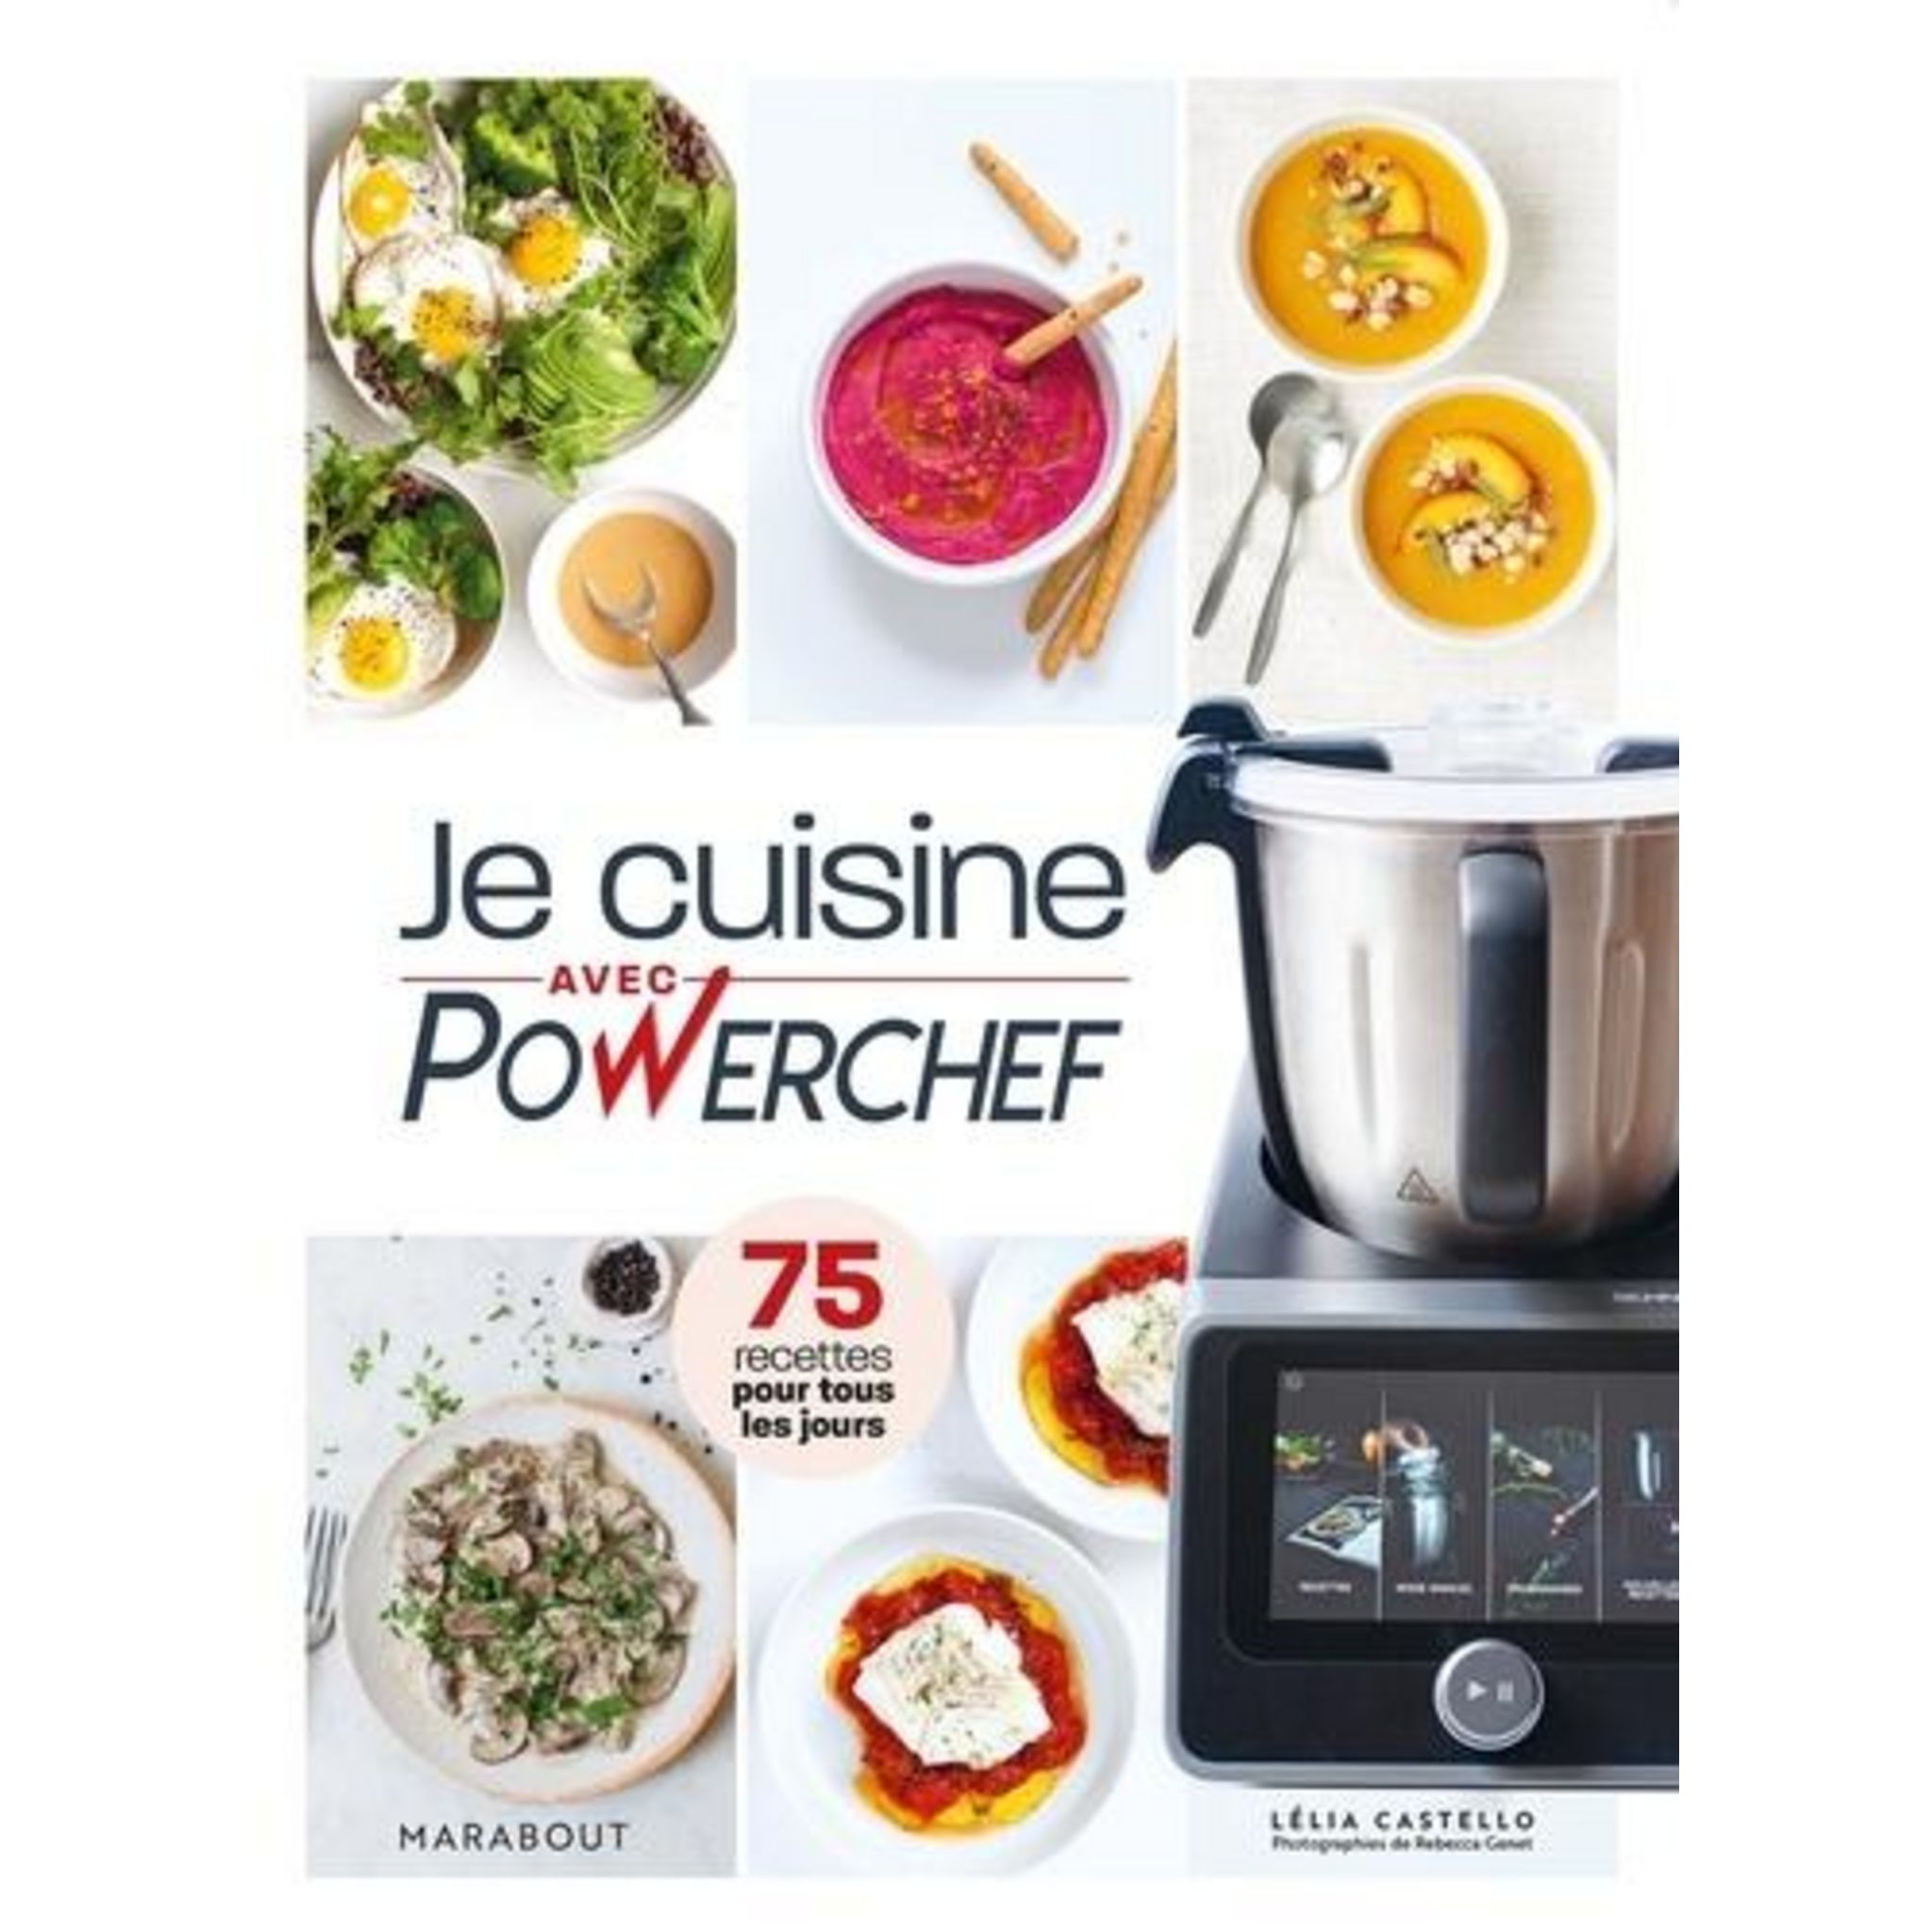 Airfryer : le robot qui cuit tout : Guillaume Marinette - 2501177207 -  Livres de cuisine salée